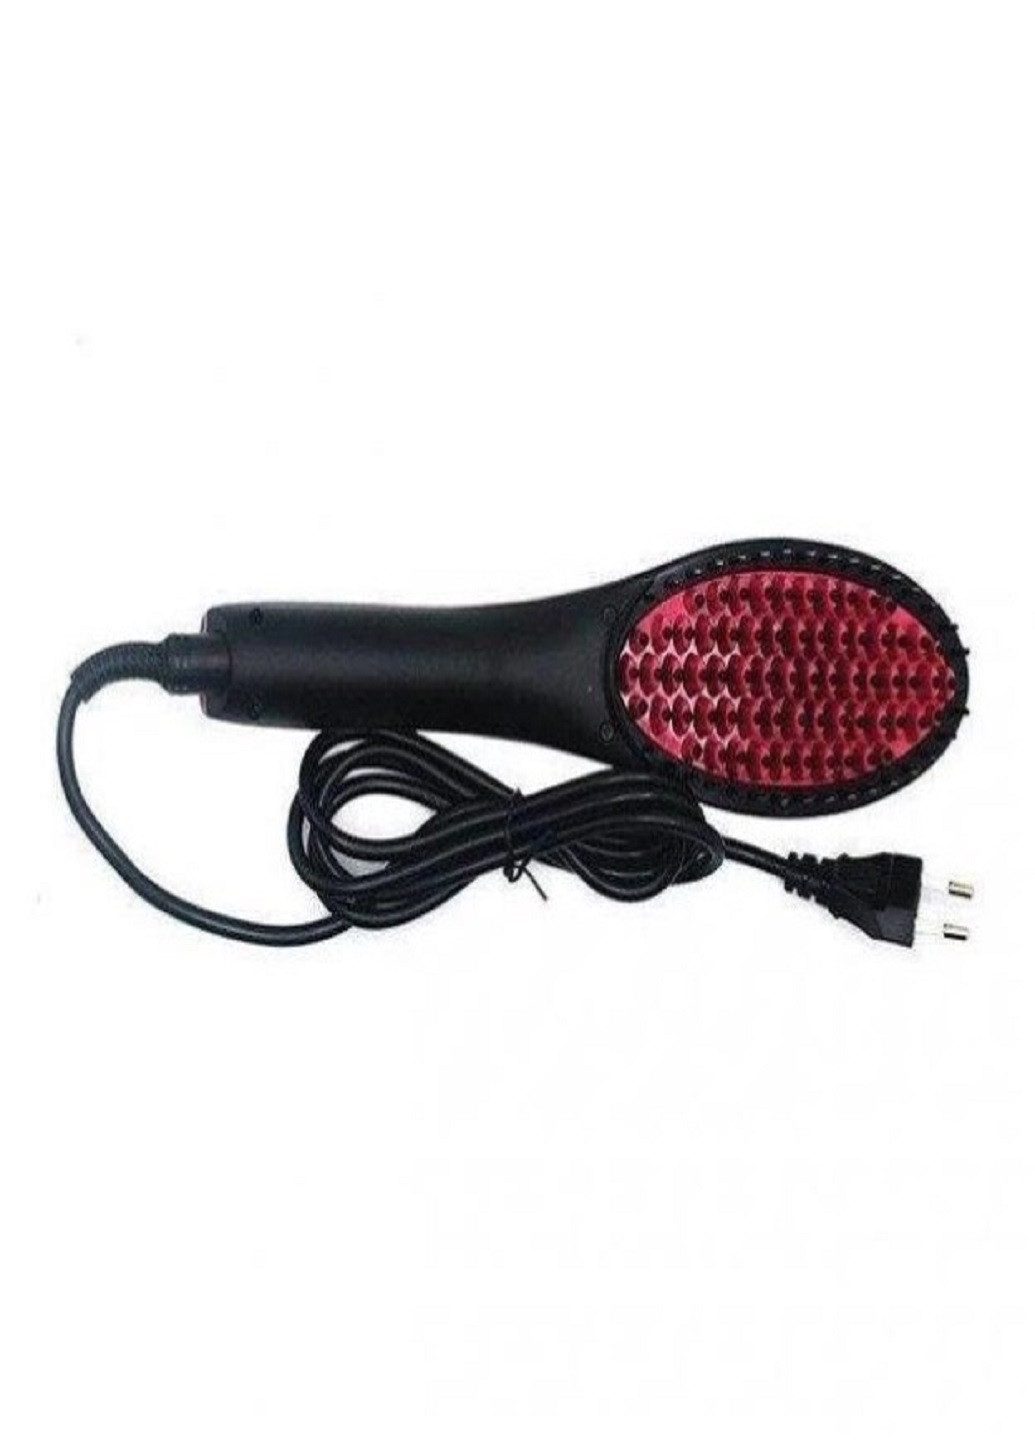 Расческа-выпрямитель для волос Straight artifact HQT-906B электрическая с LED дисплеем VTech (259575613)